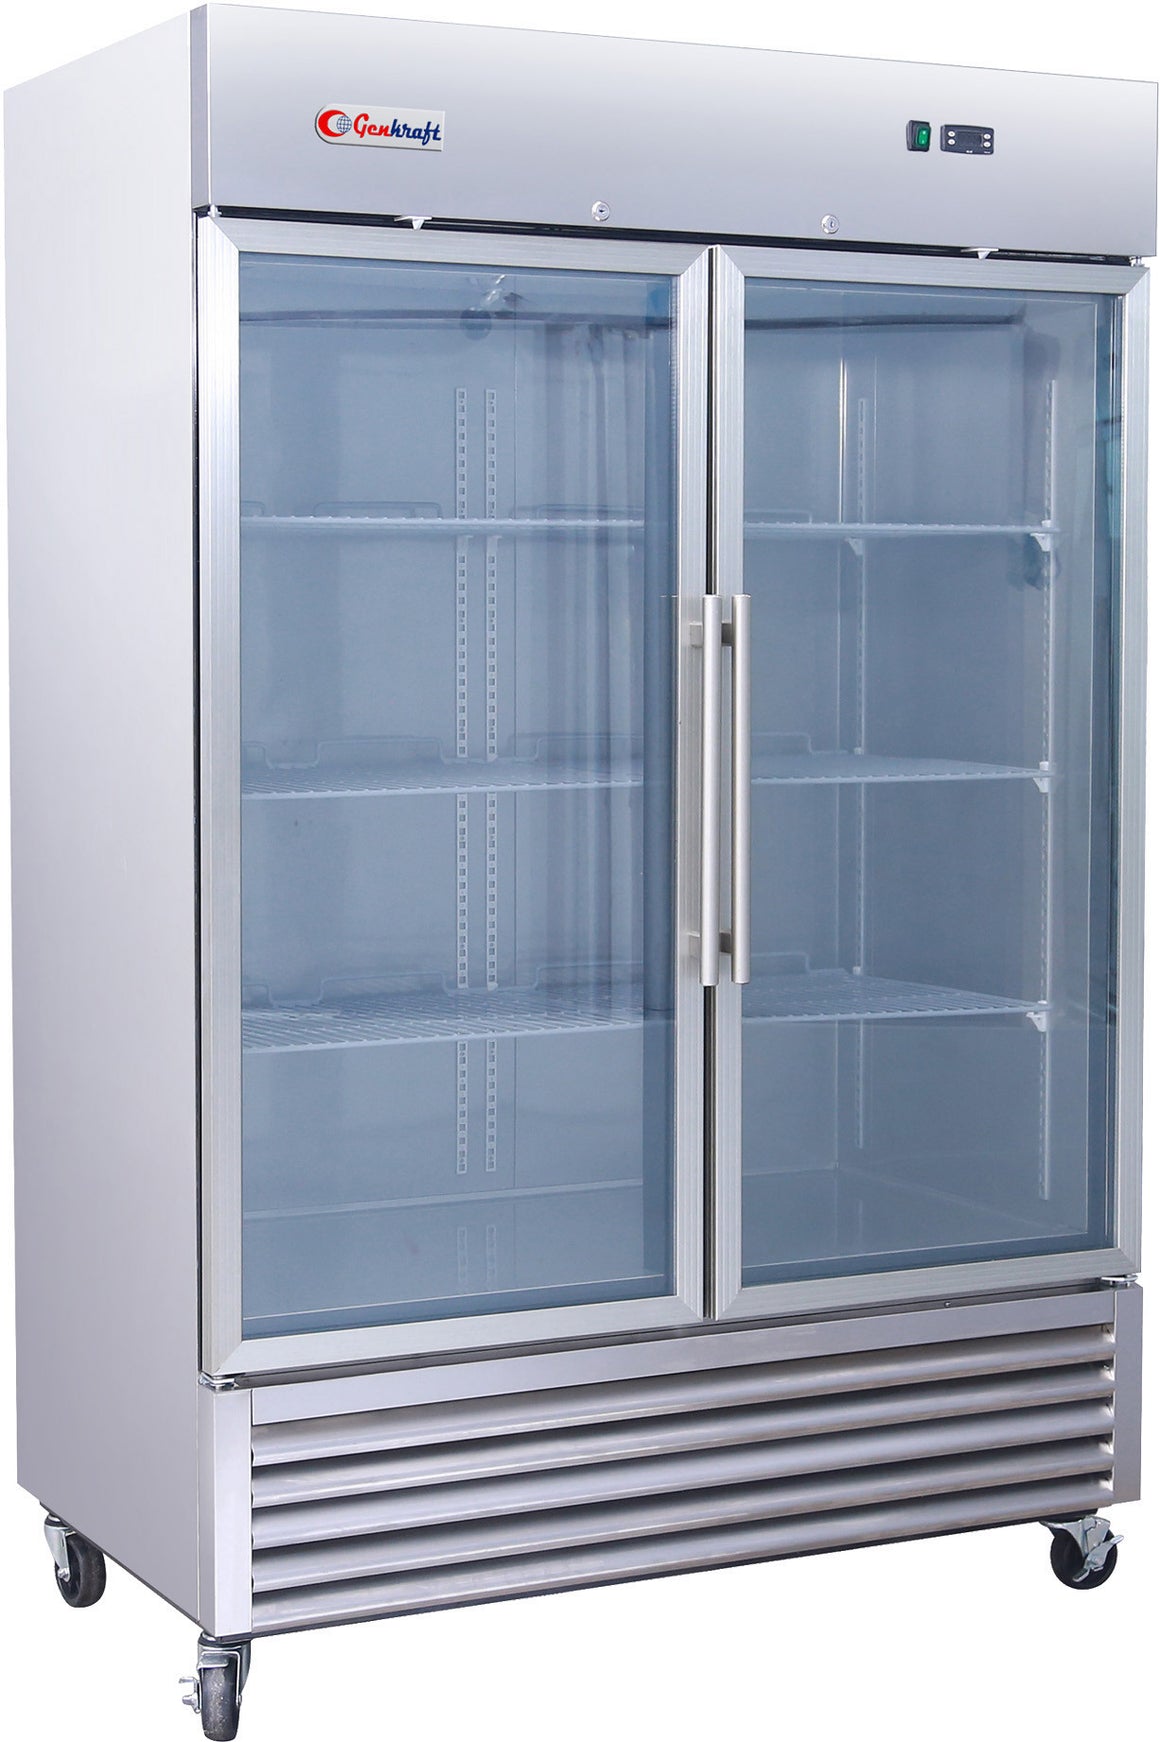 Double Glass Door Freezer